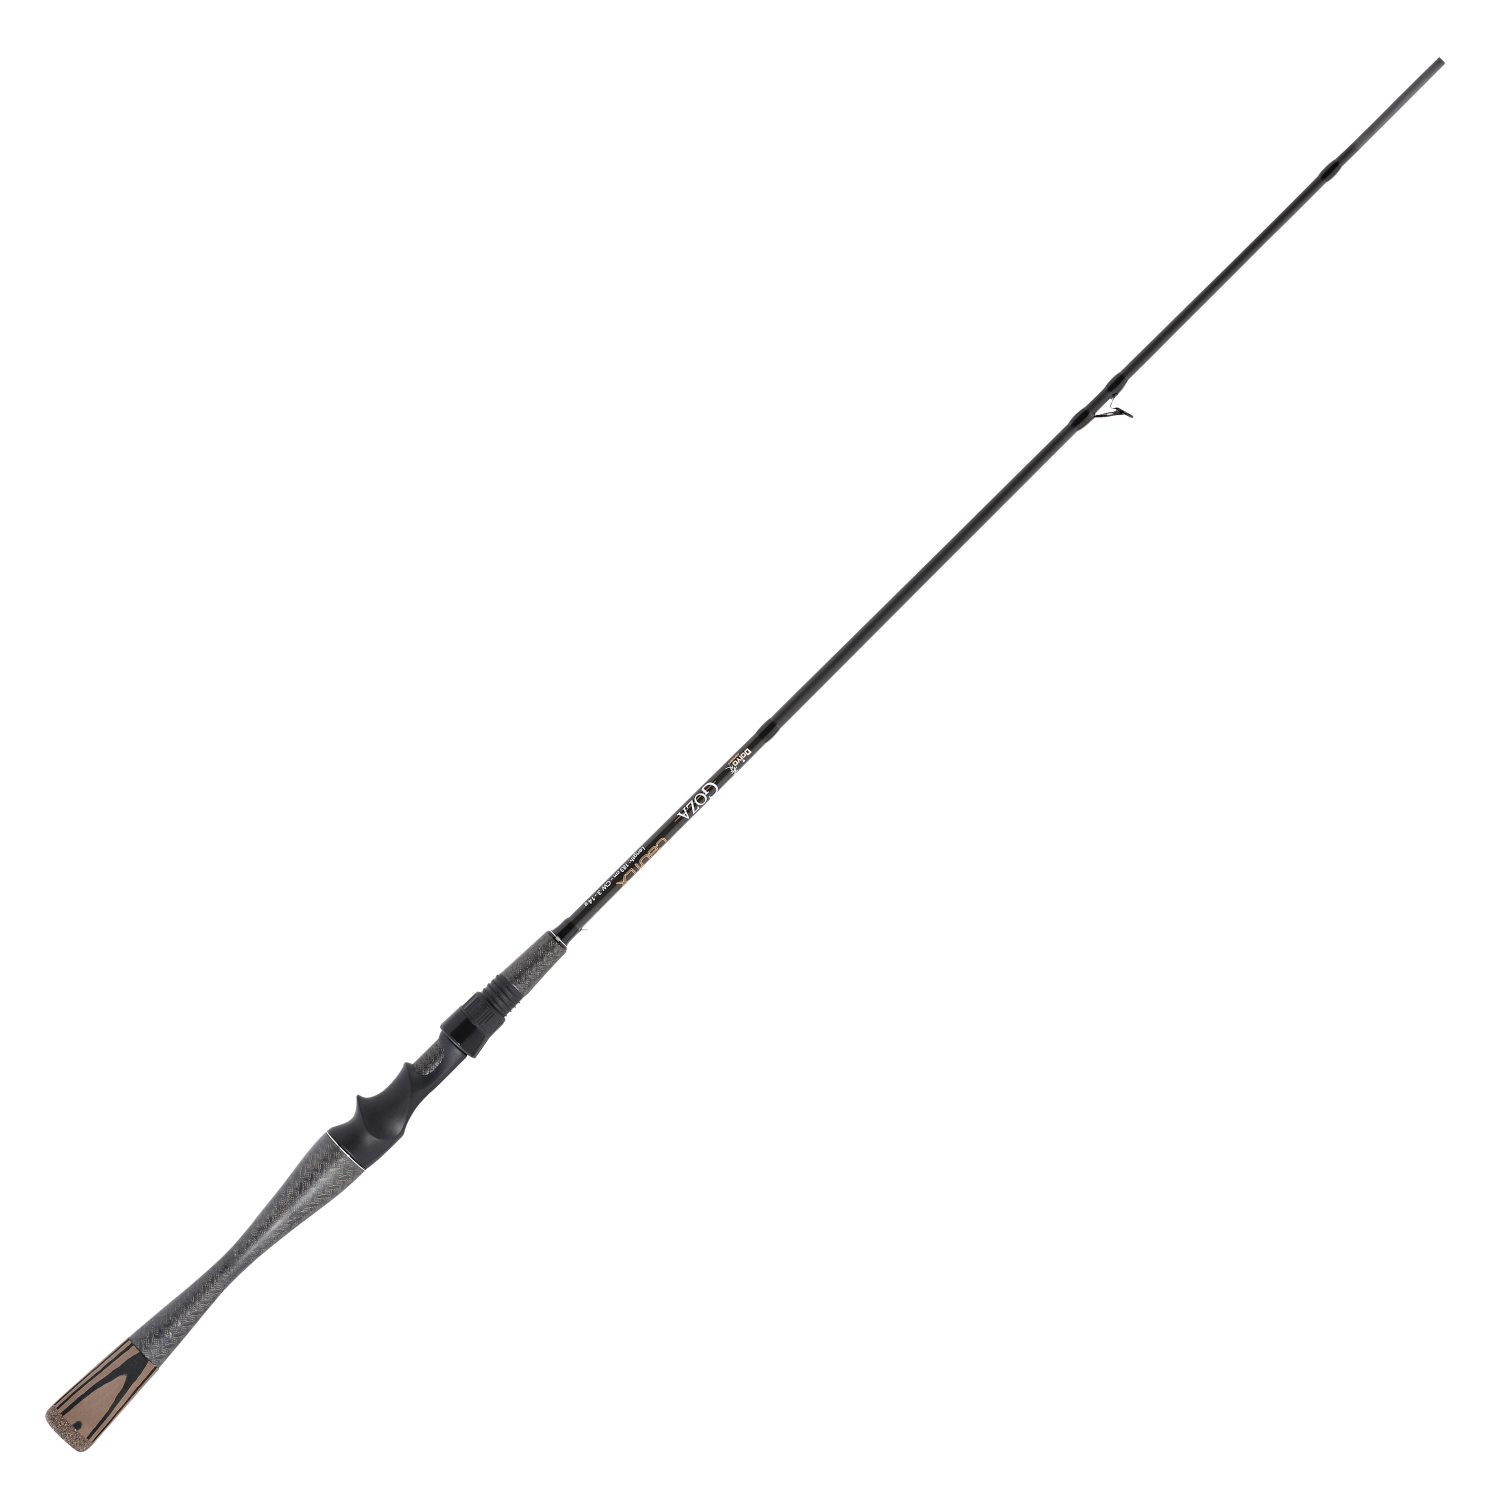 Doiyo Sänger Doiyo Goza 183 cm Fishing Rod 